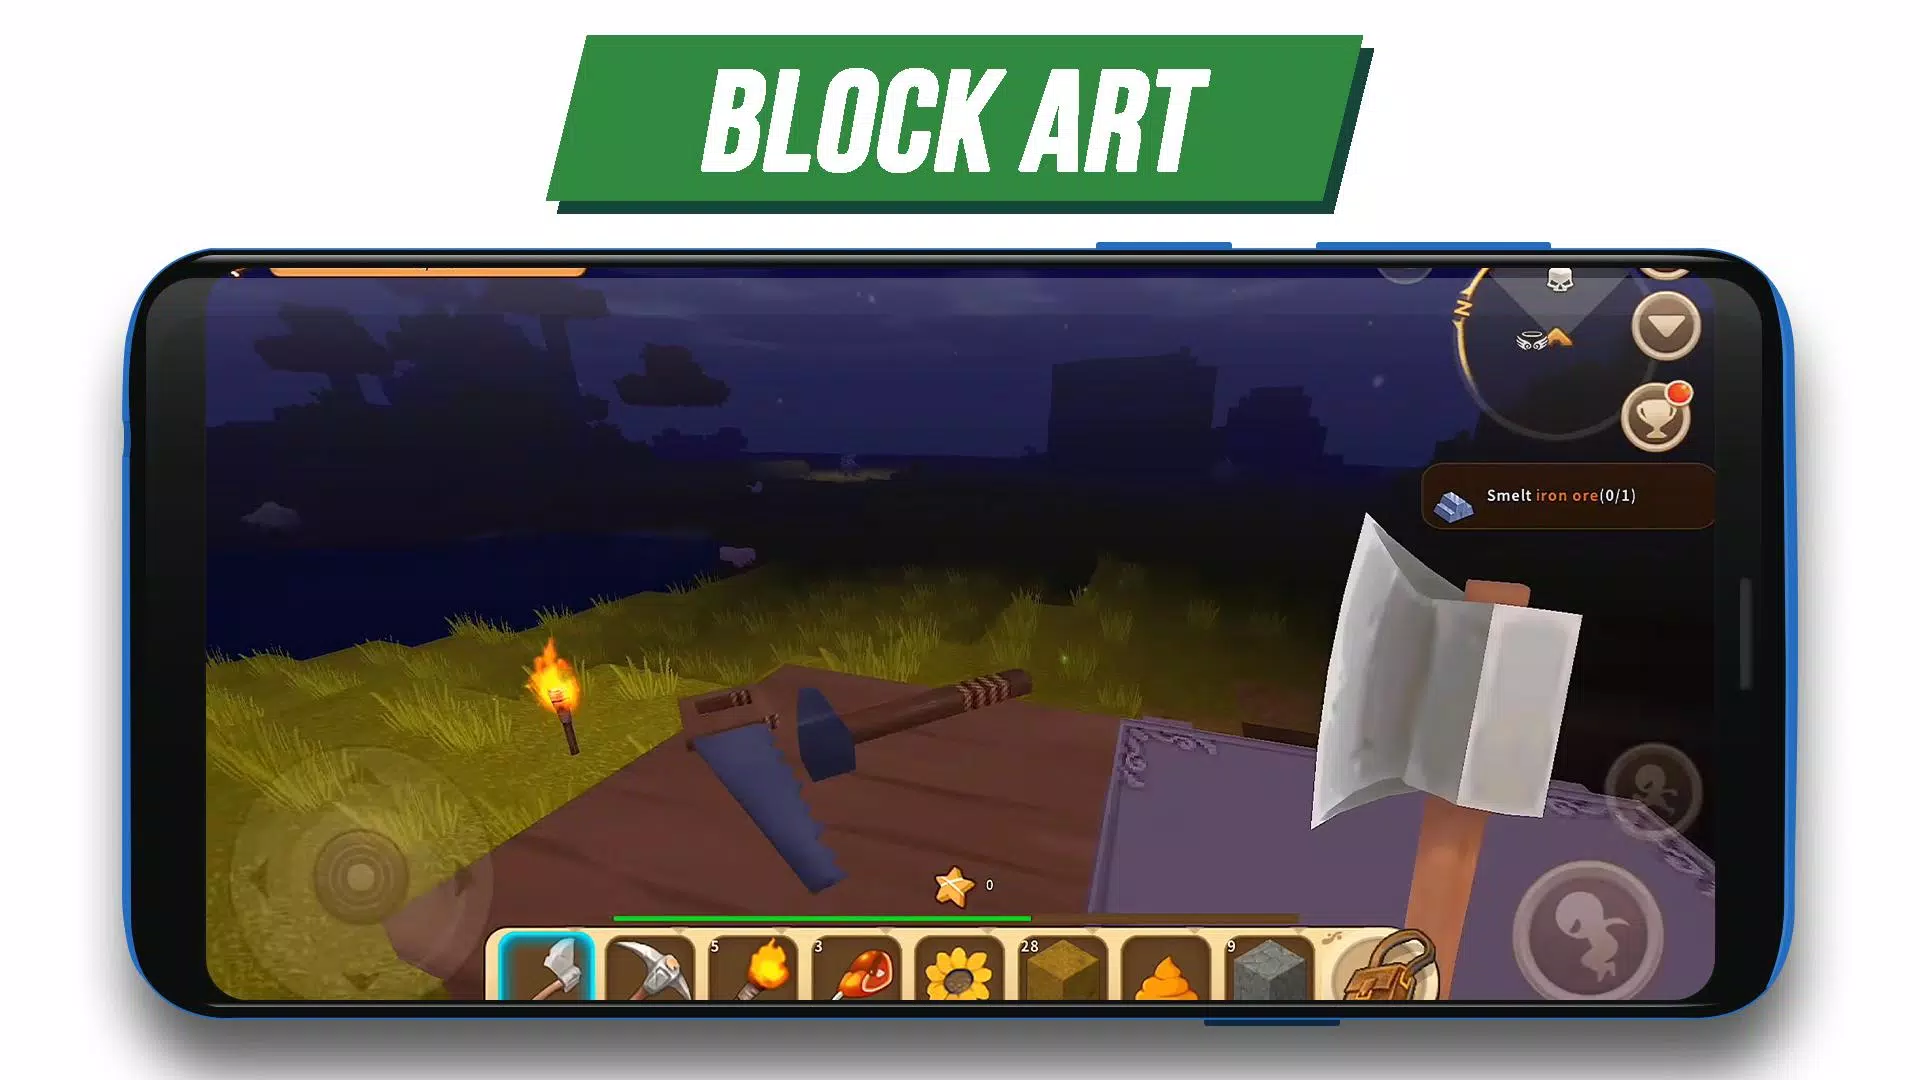 Guide: Mini world craft block art 2020 APK pour Android Télécharger